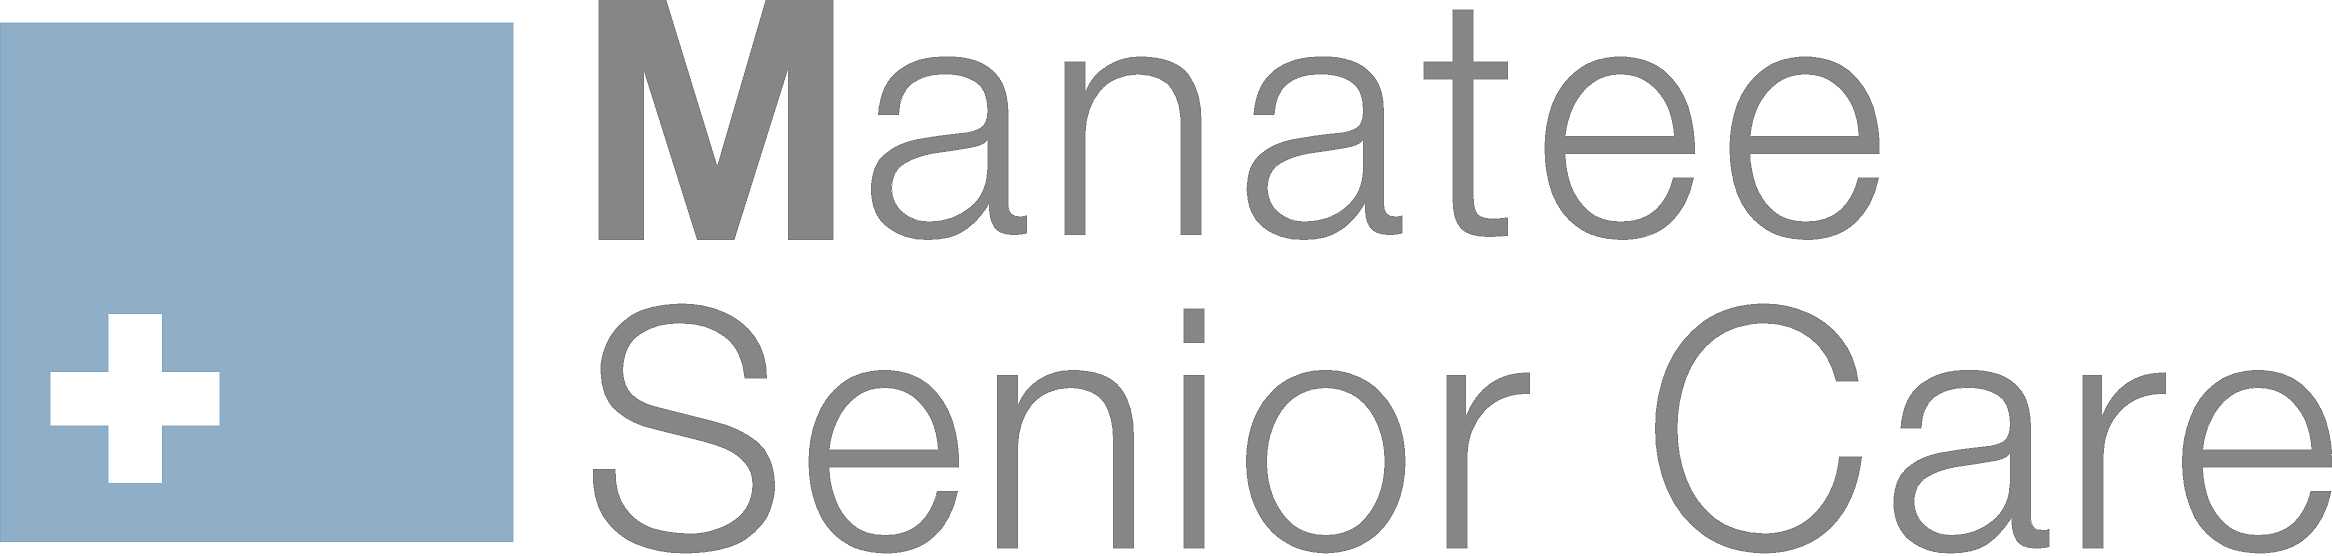 Manatee-Senior-Care-logo.jpg